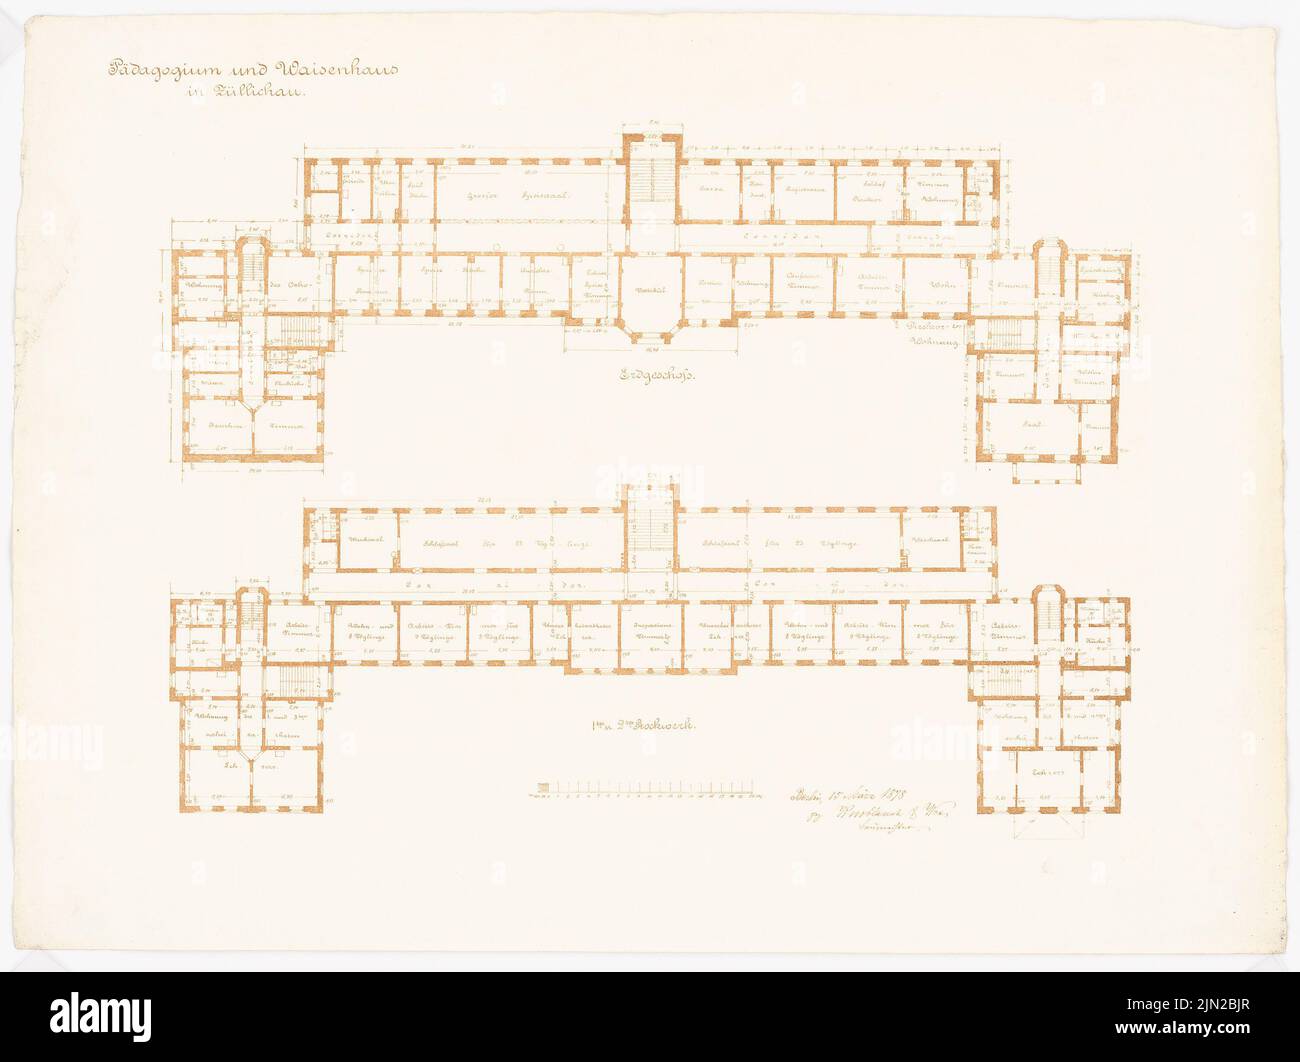 Knoblauch & Wex, pedagogía real y orfanato, Züllichau: Grundriss eg, 1st piso. Presión sobre el papel, 52,9 x 70,7 cm (incluidos los bordes de escaneado) Foto de stock